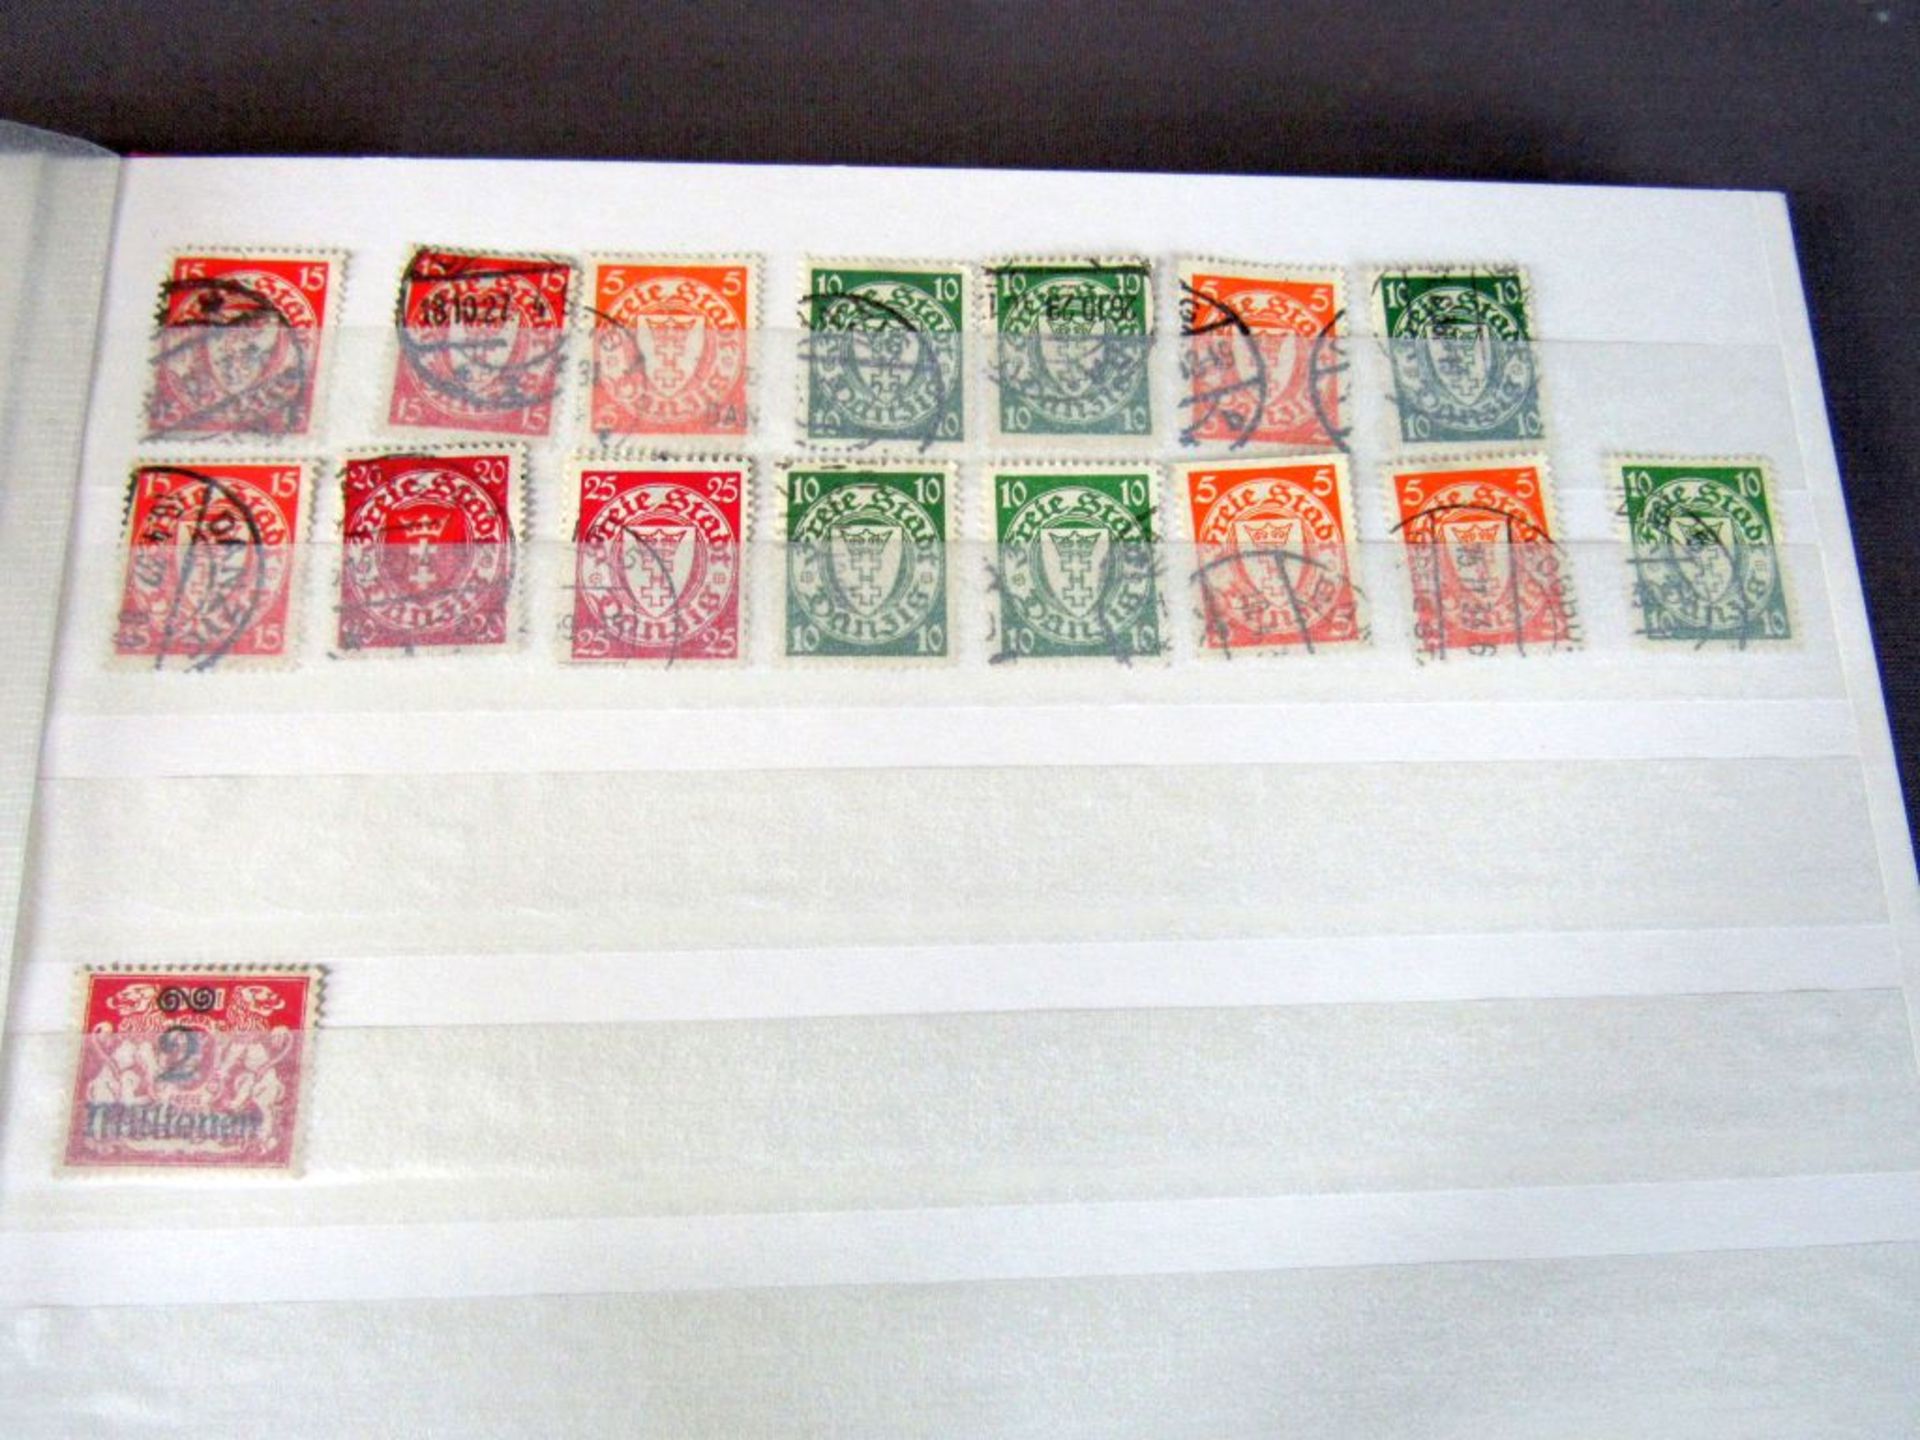 Prall gefülltes Briefmarkenalbum 1. - Image 12 of 12